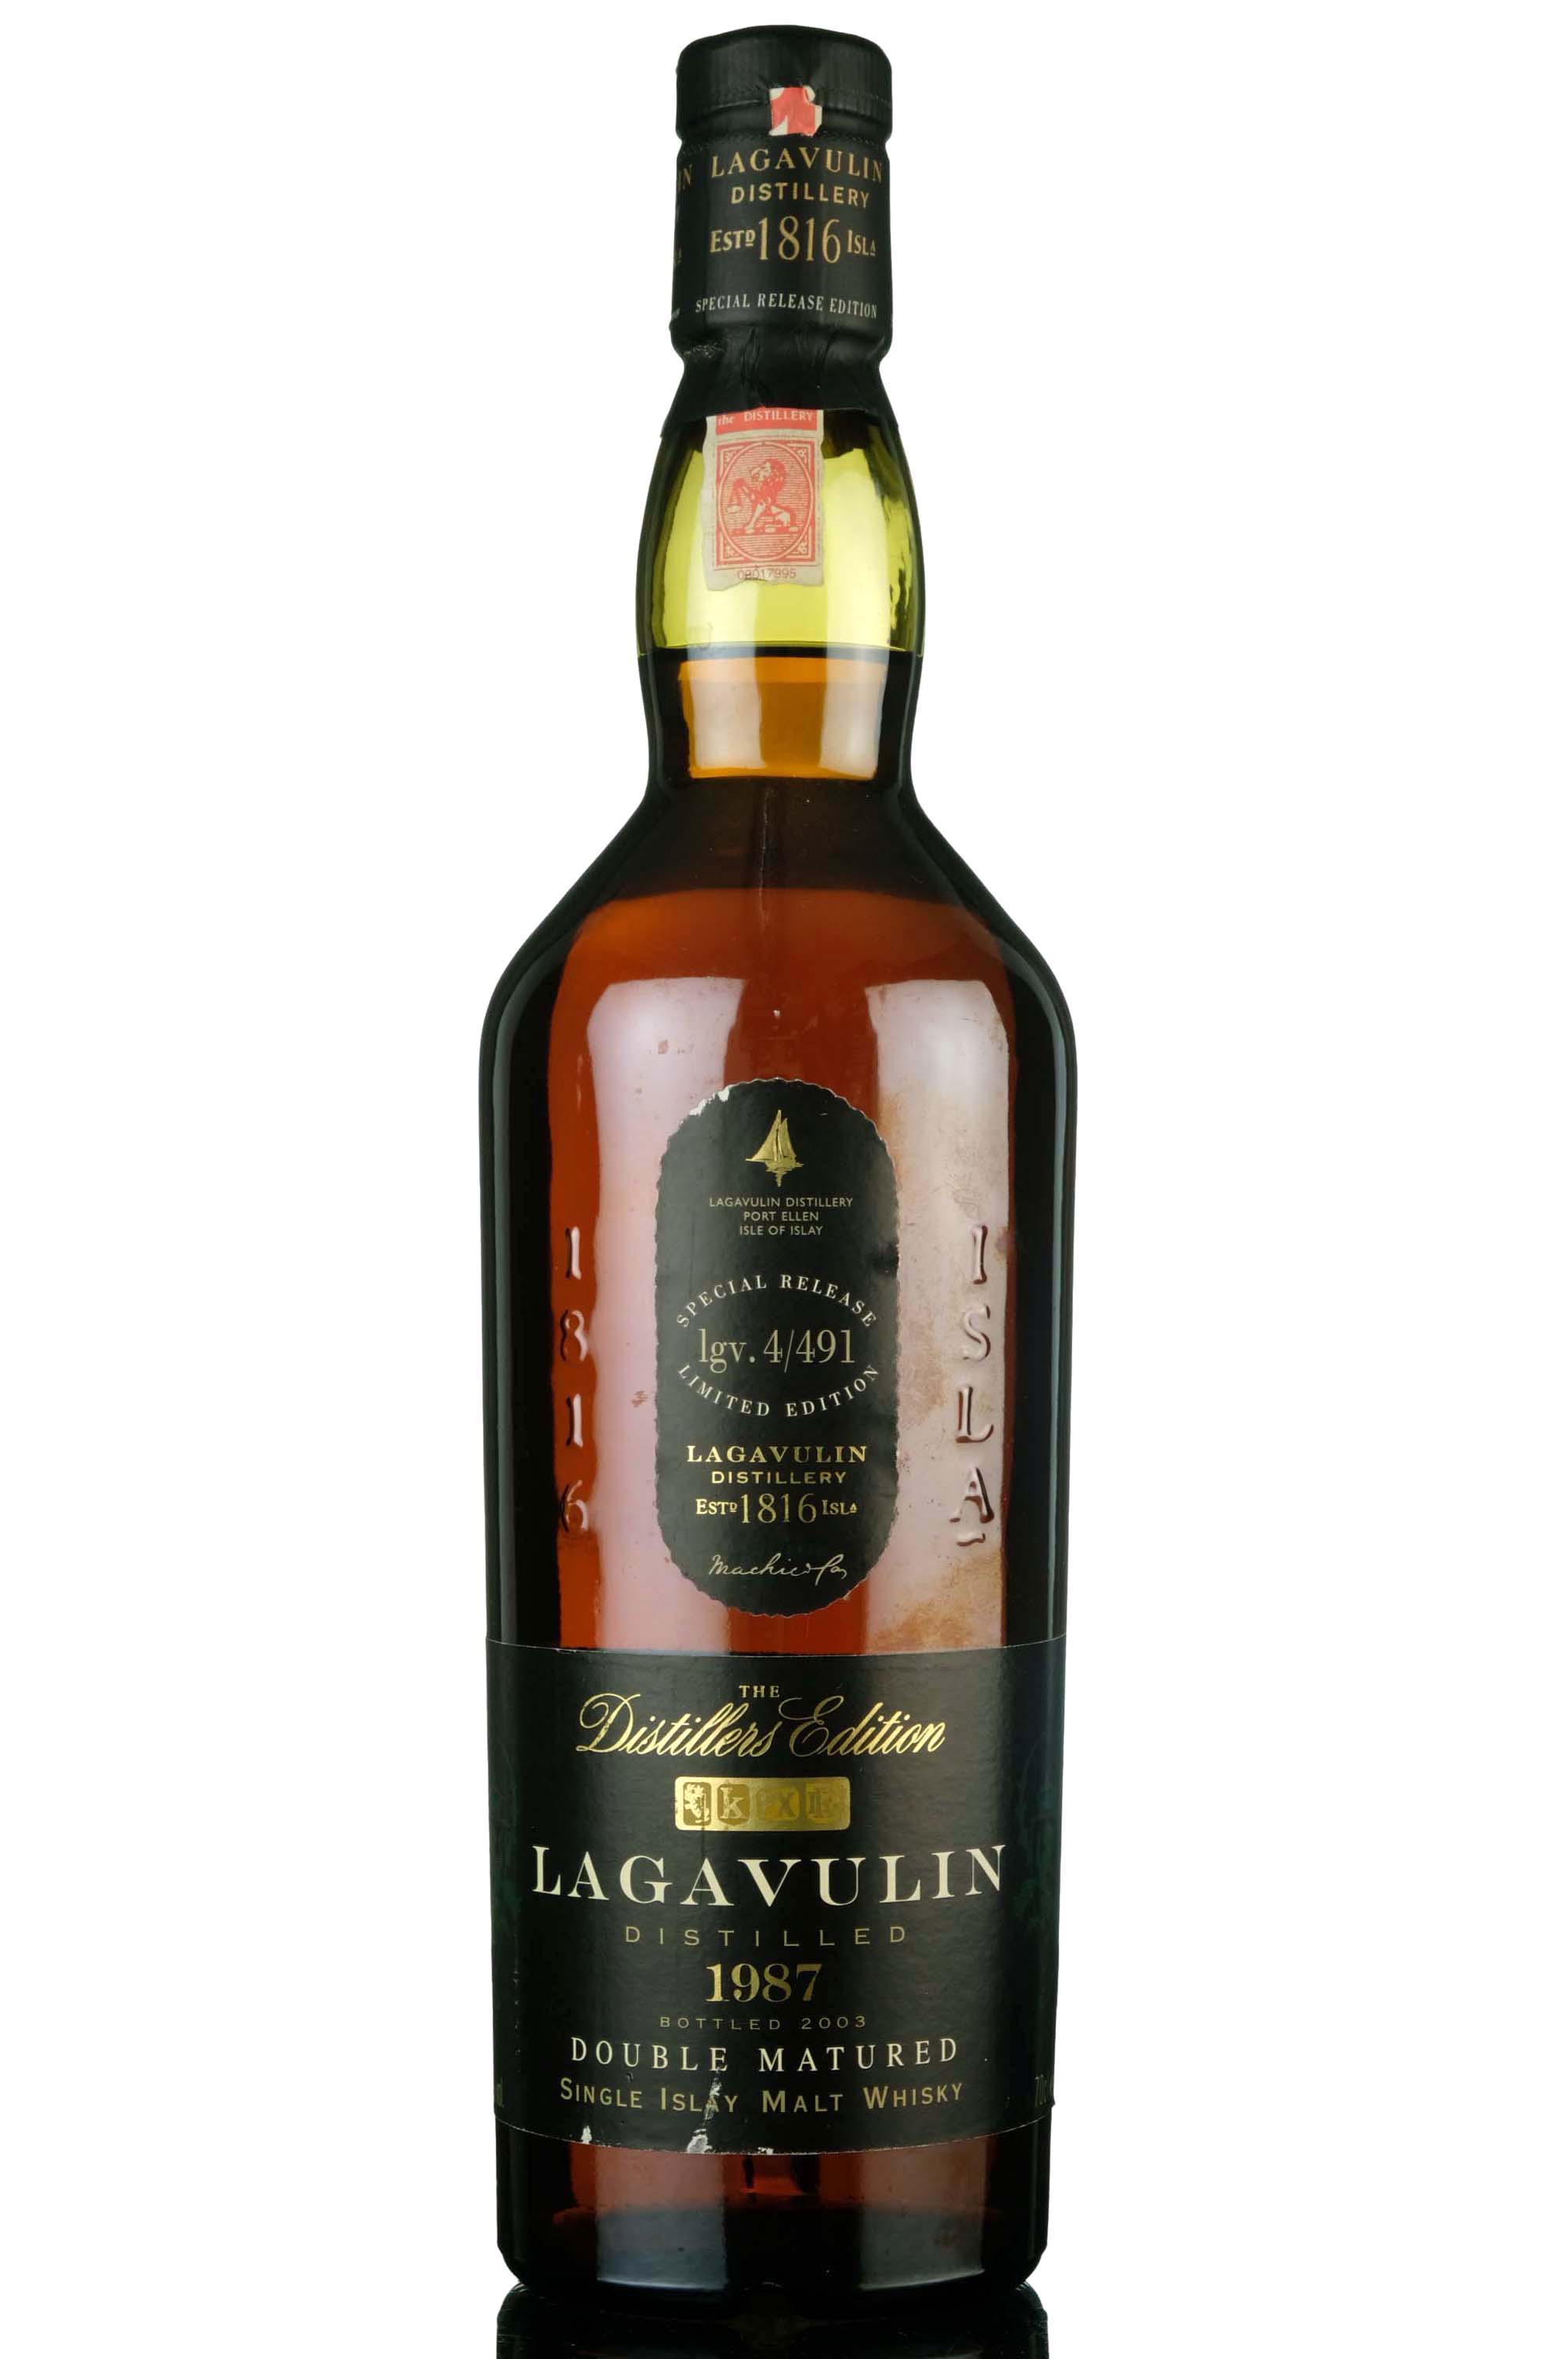 Lagavulin 1987 - Distillers Edition 2003